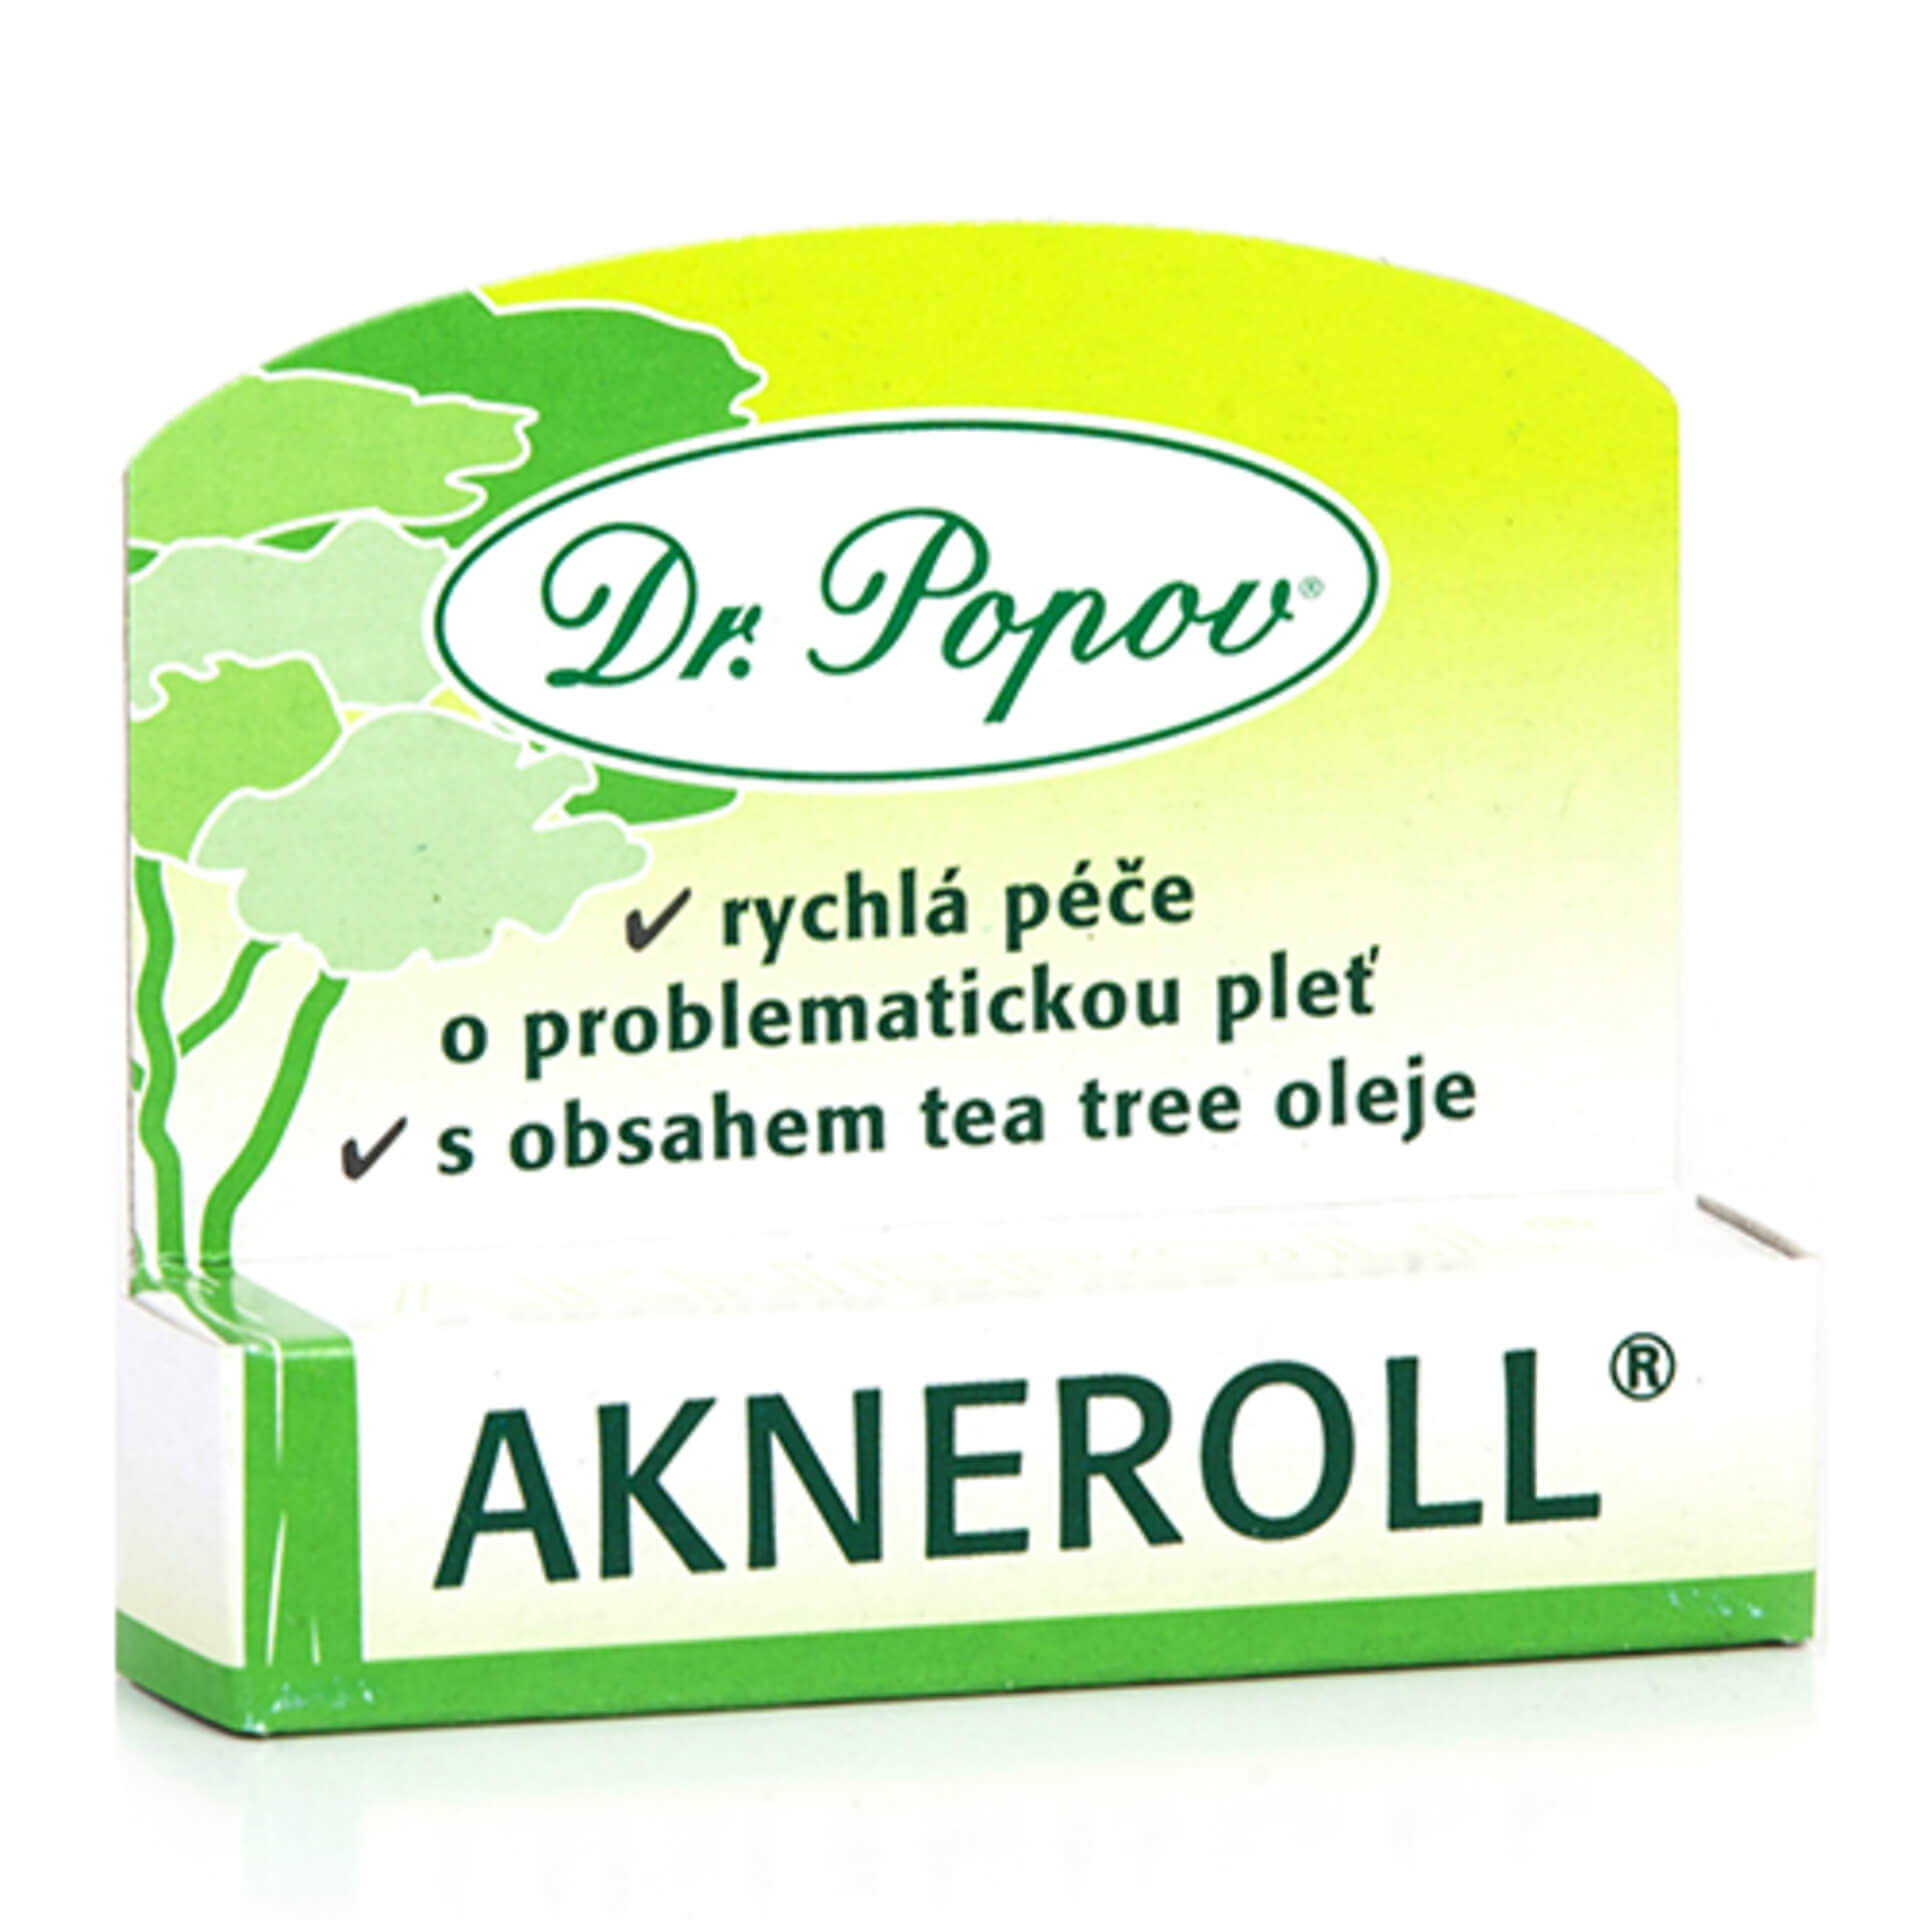 E-shop Dr. Popov Akneroll, 6 ml